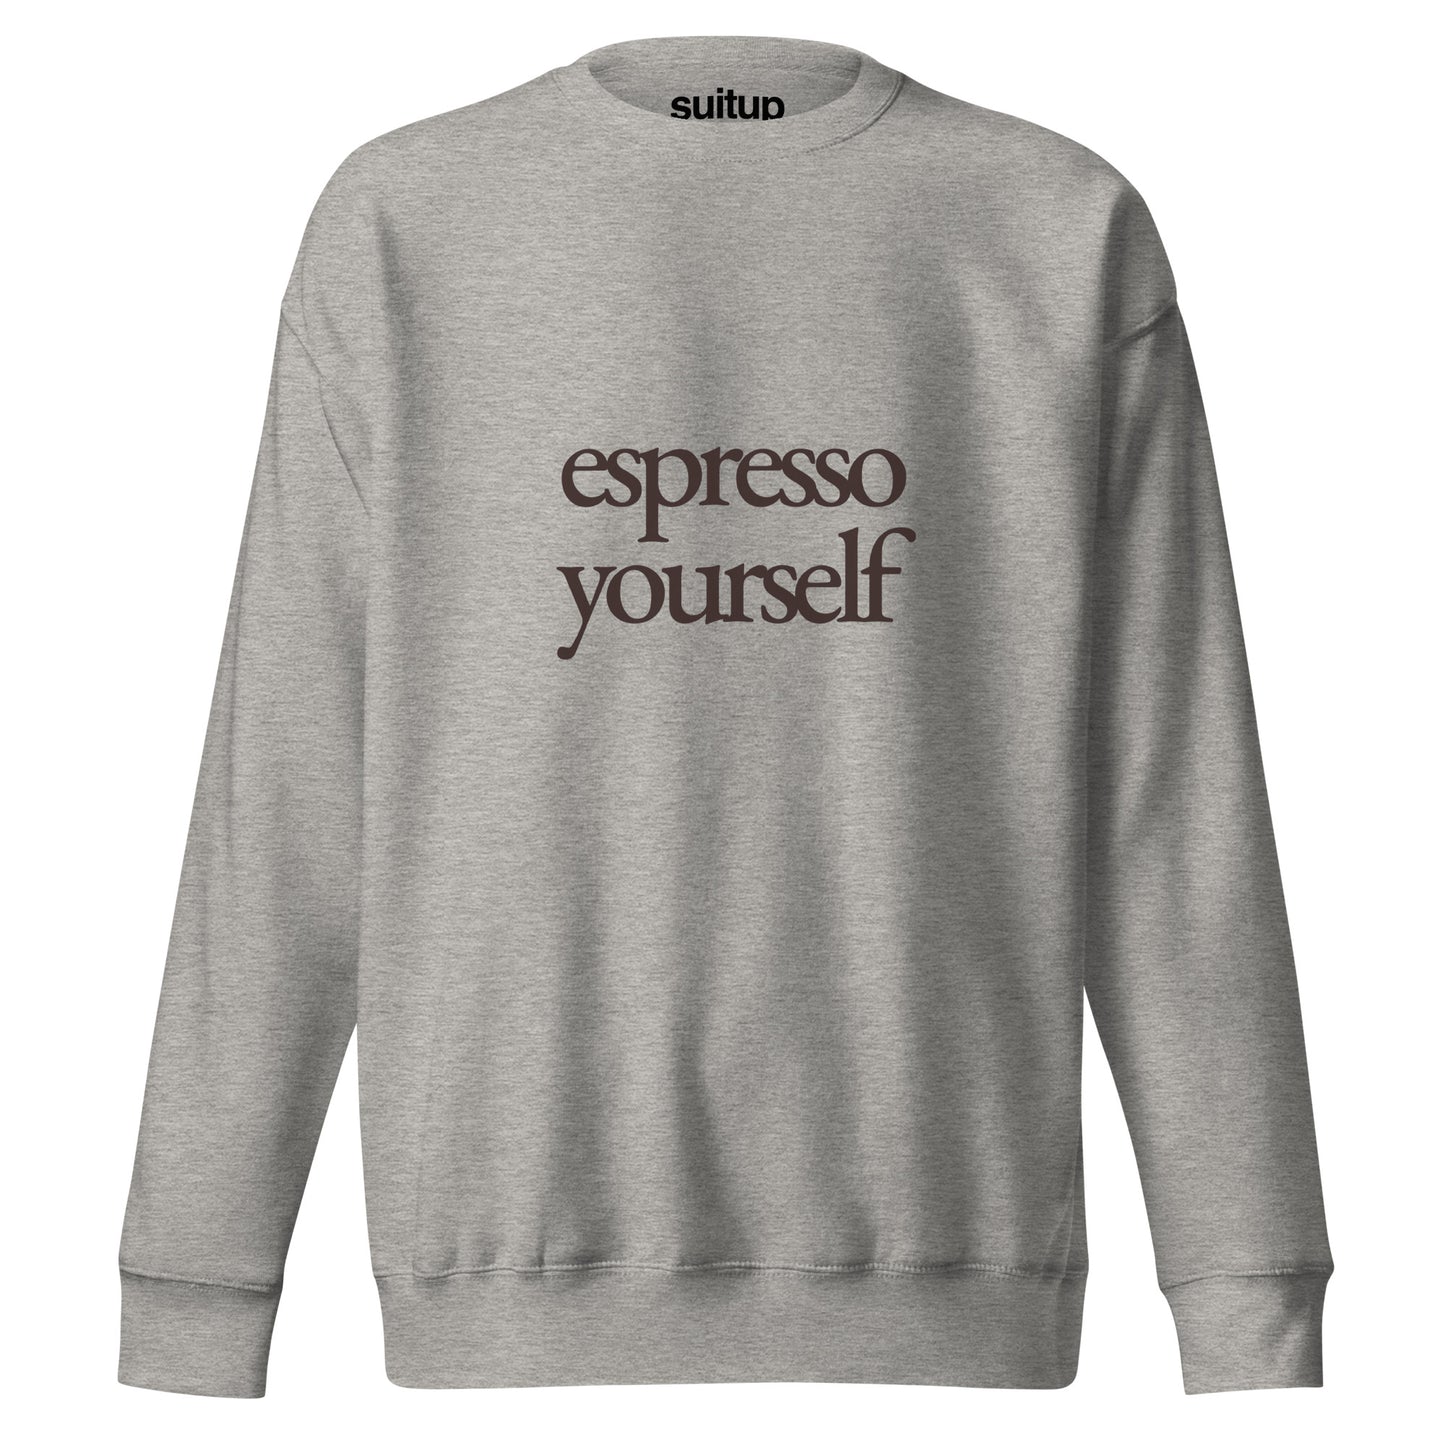 De Espresso Yourself Sweater